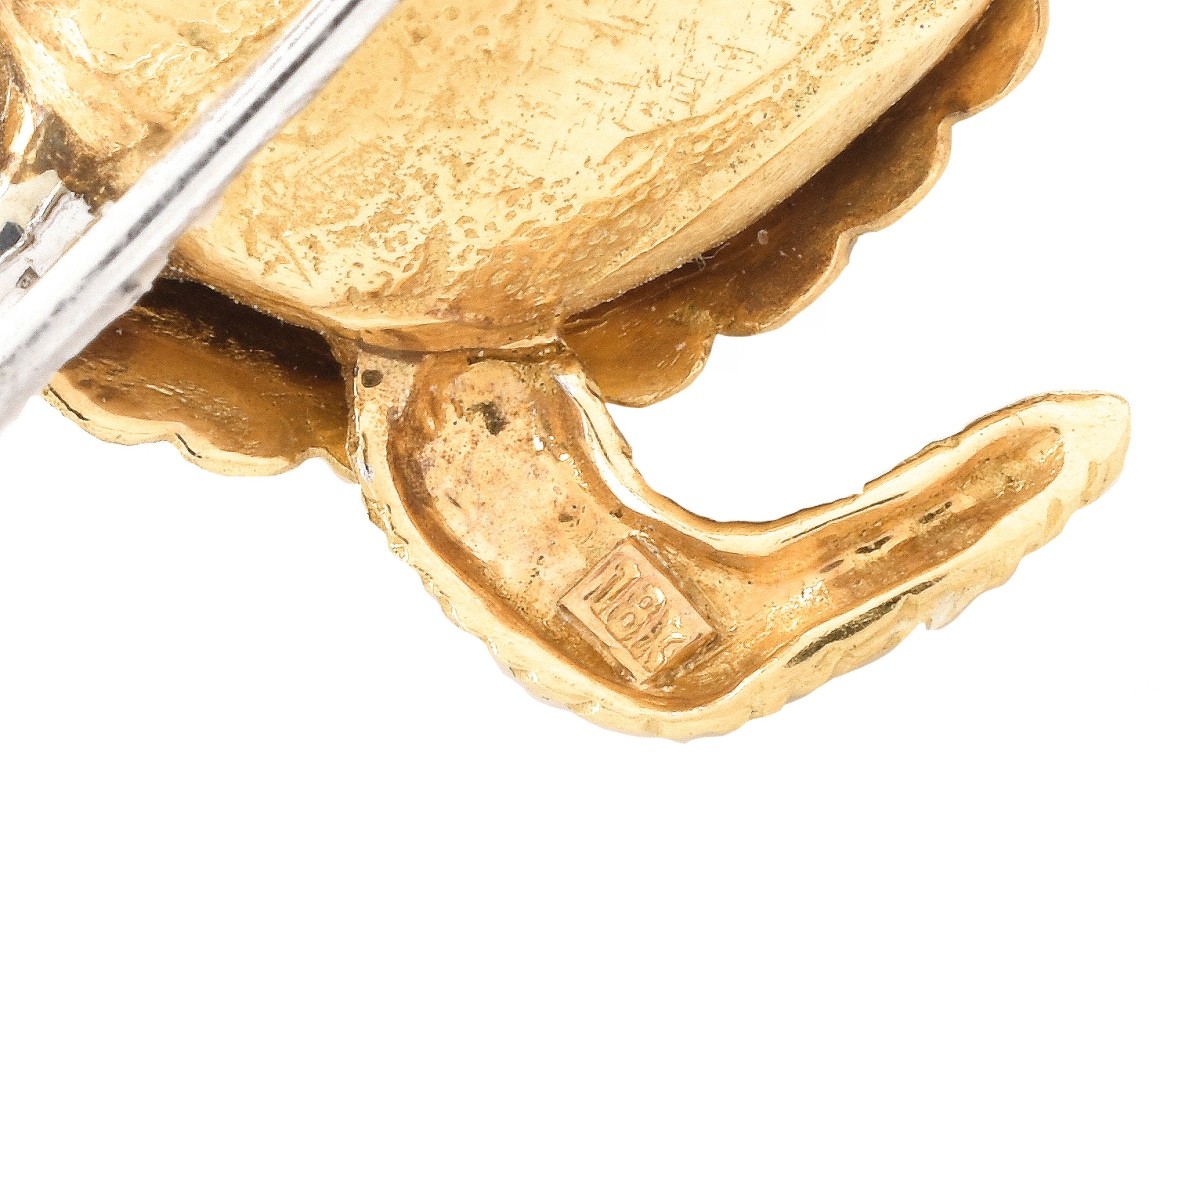 Vintage 18K Gold Turtle Brooch